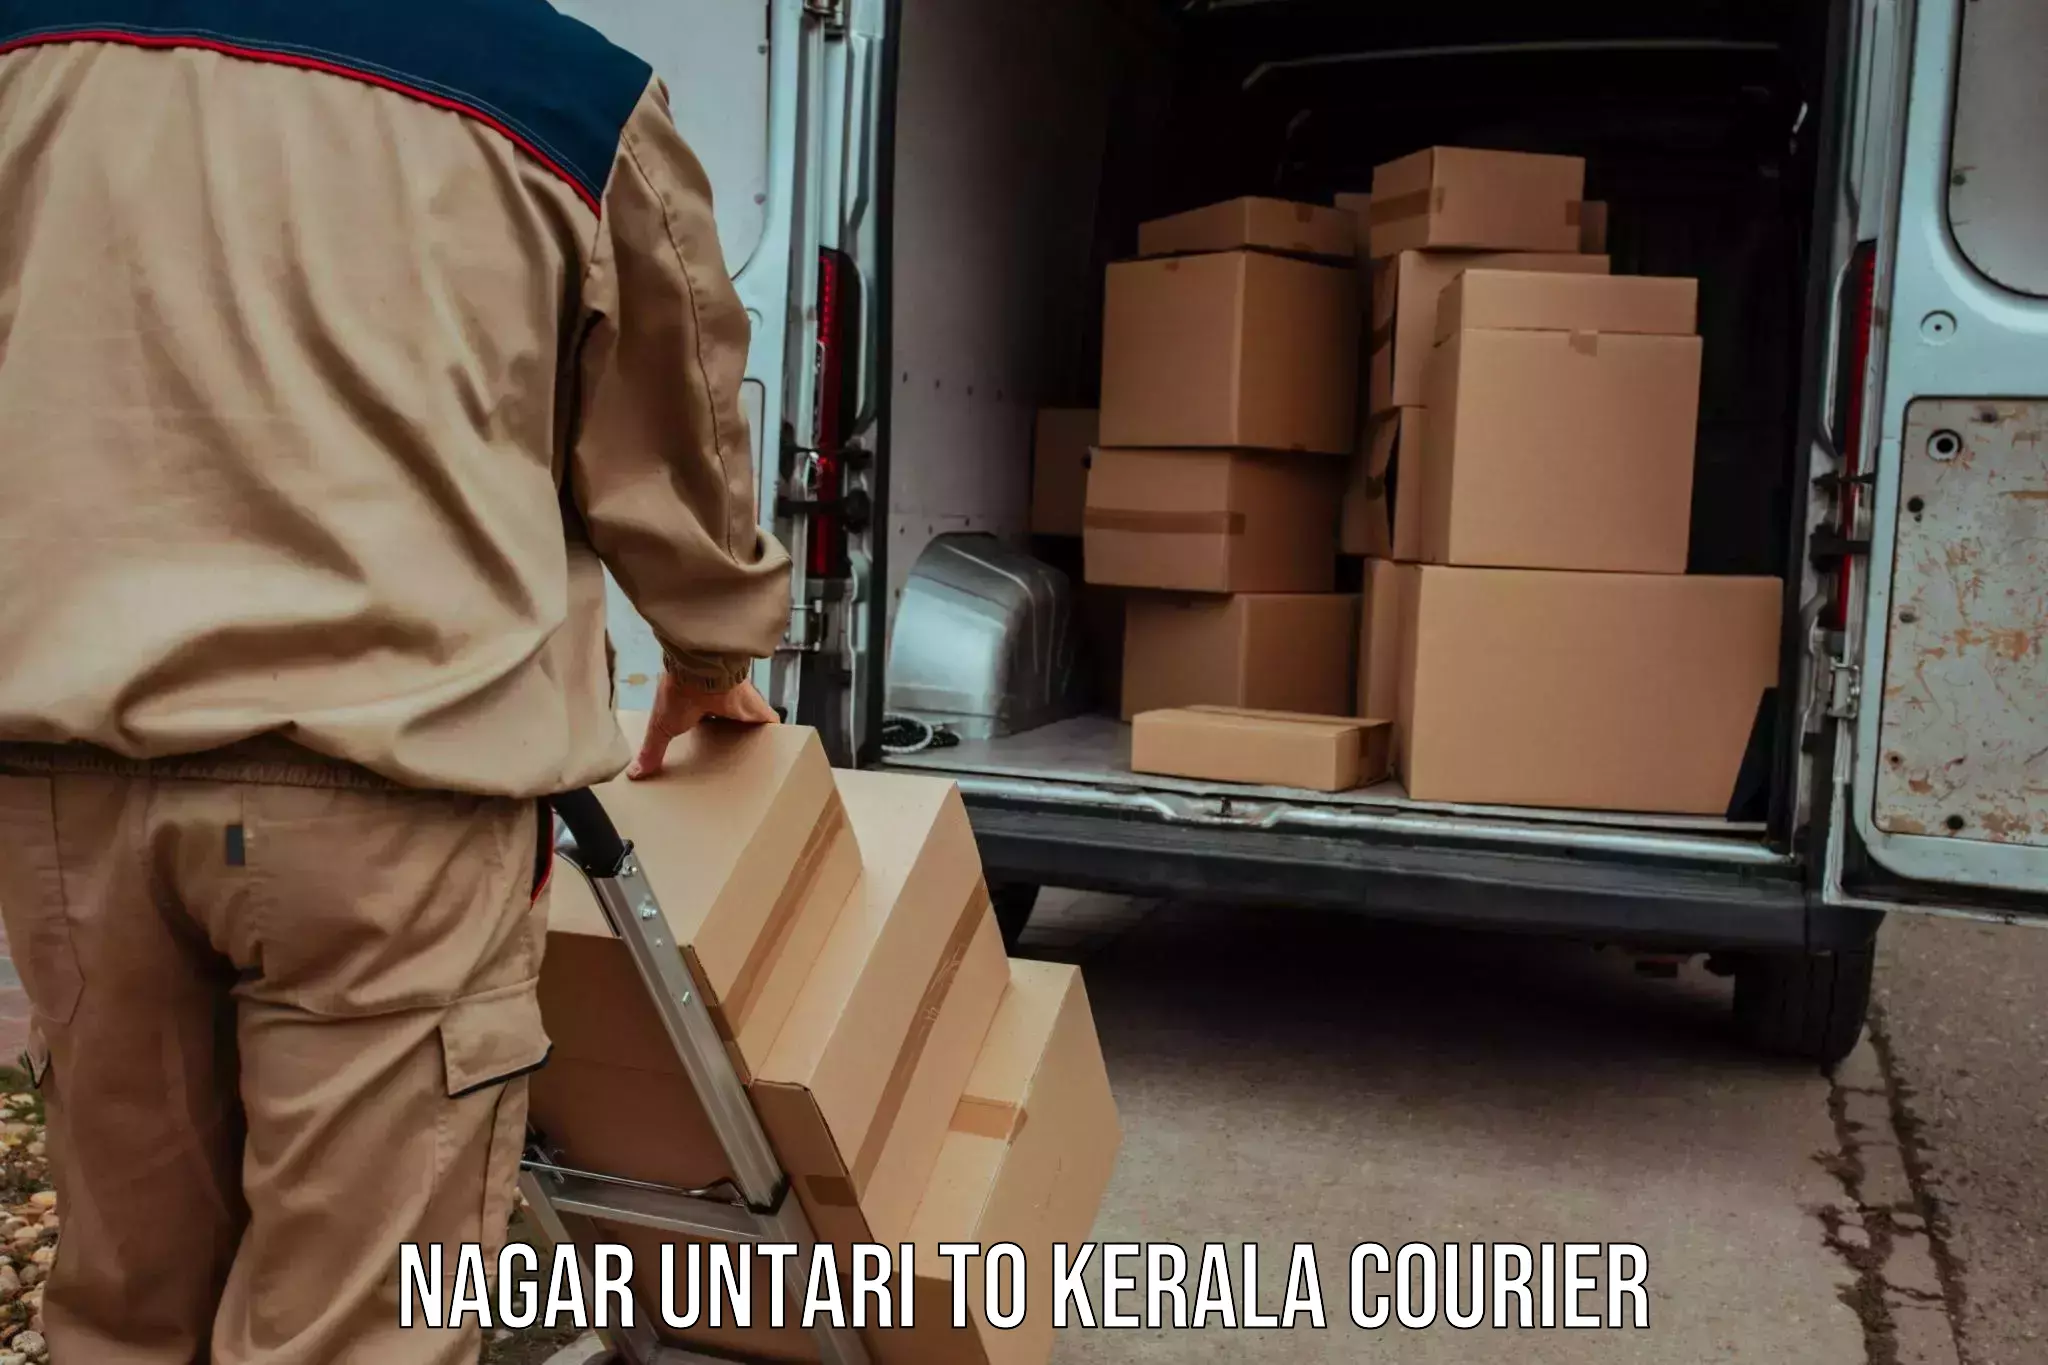 24/7 courier service in Nagar Untari to Karunagappally